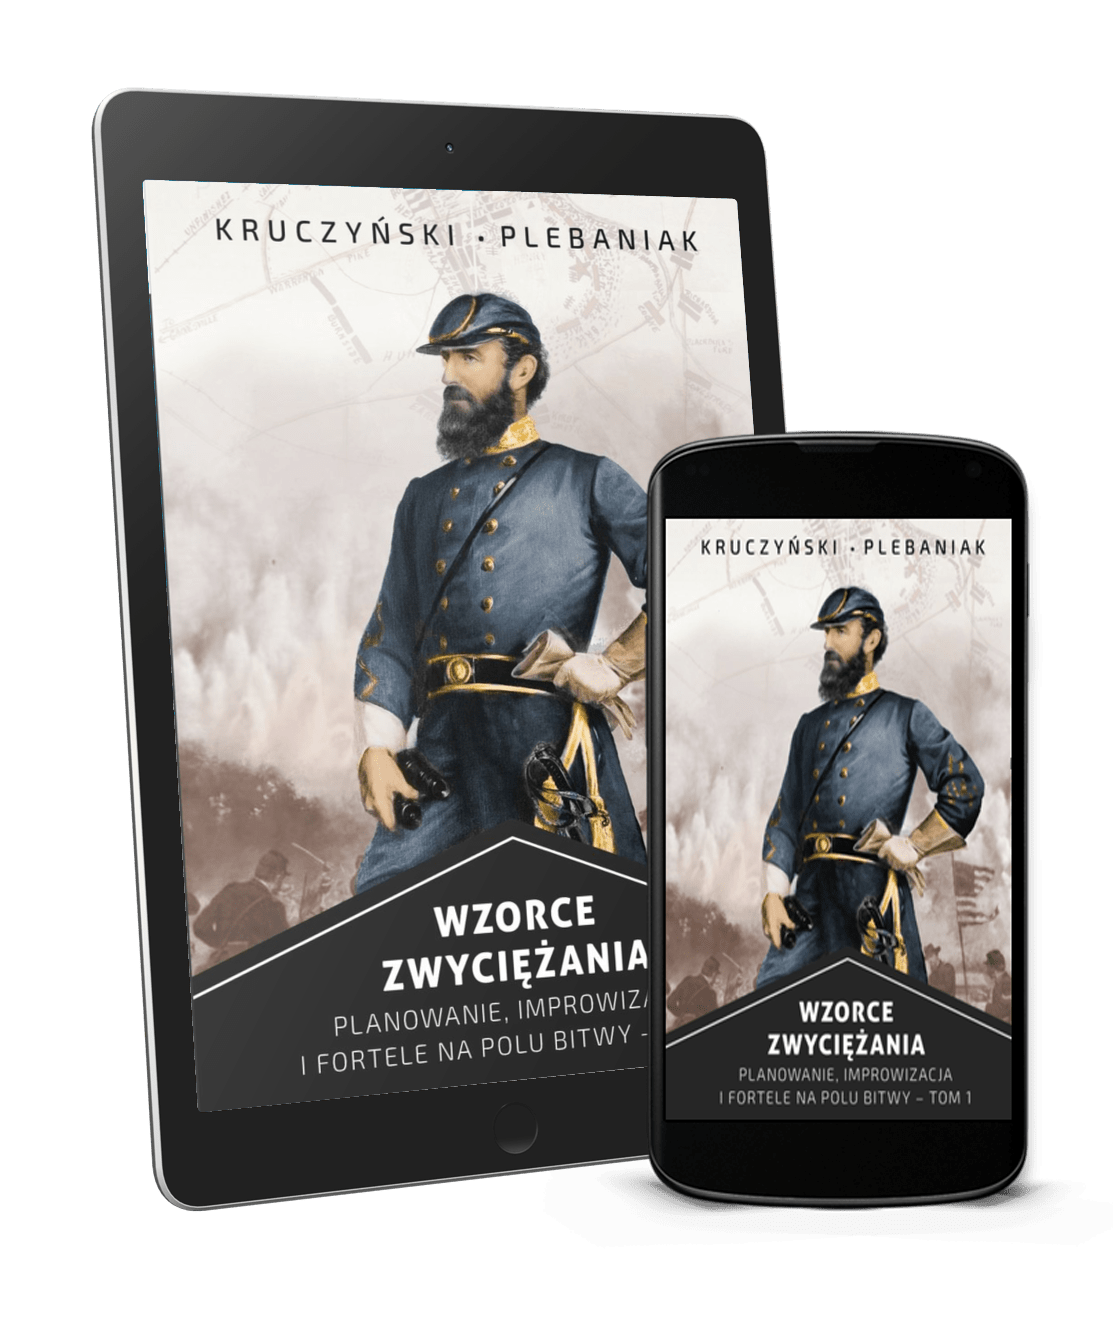  | Piotr Plebaniak, Wzorce Zwyciężania tom 1 Planowanie, improwizacja i fortele na polu bitwy - ebook przód okładki 